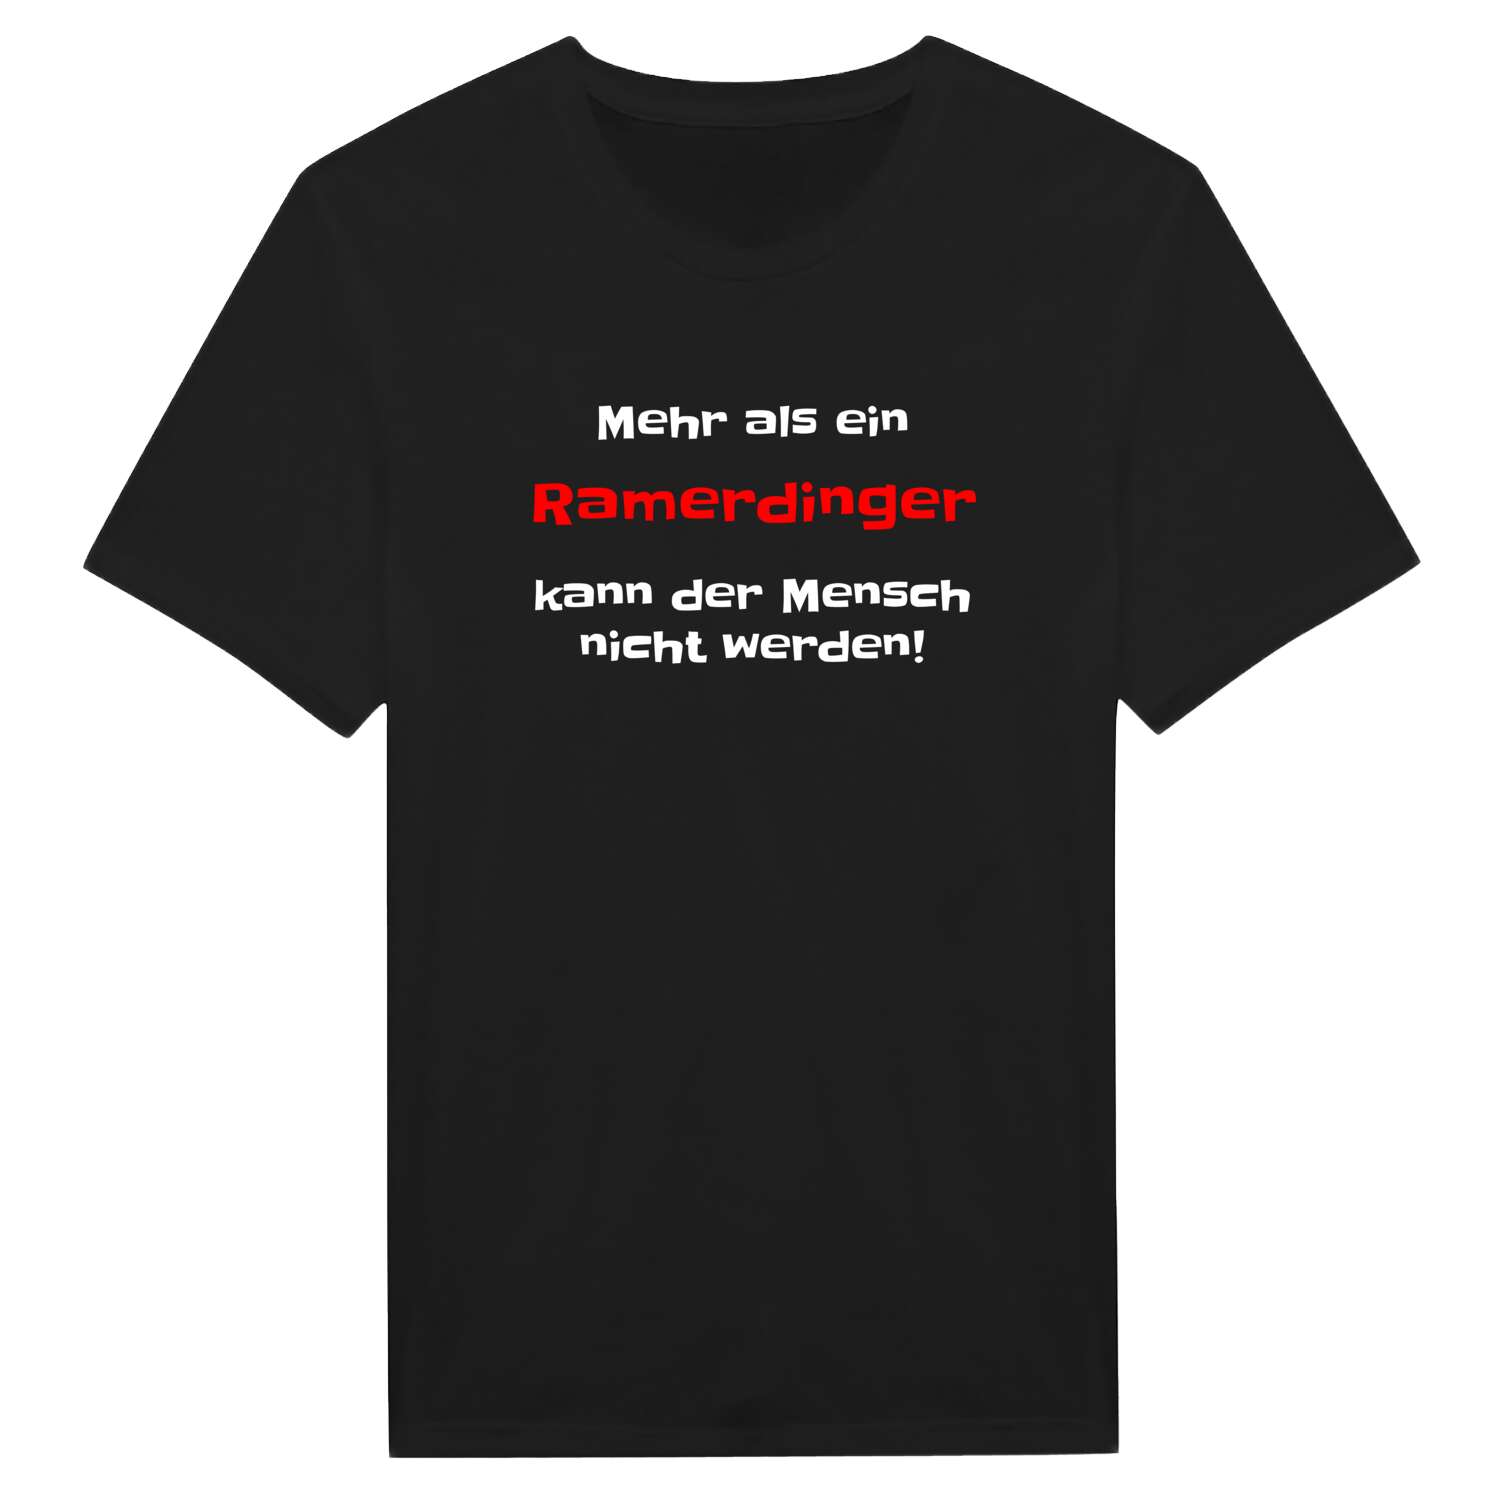 Ramerding T-Shirt »Mehr als ein«